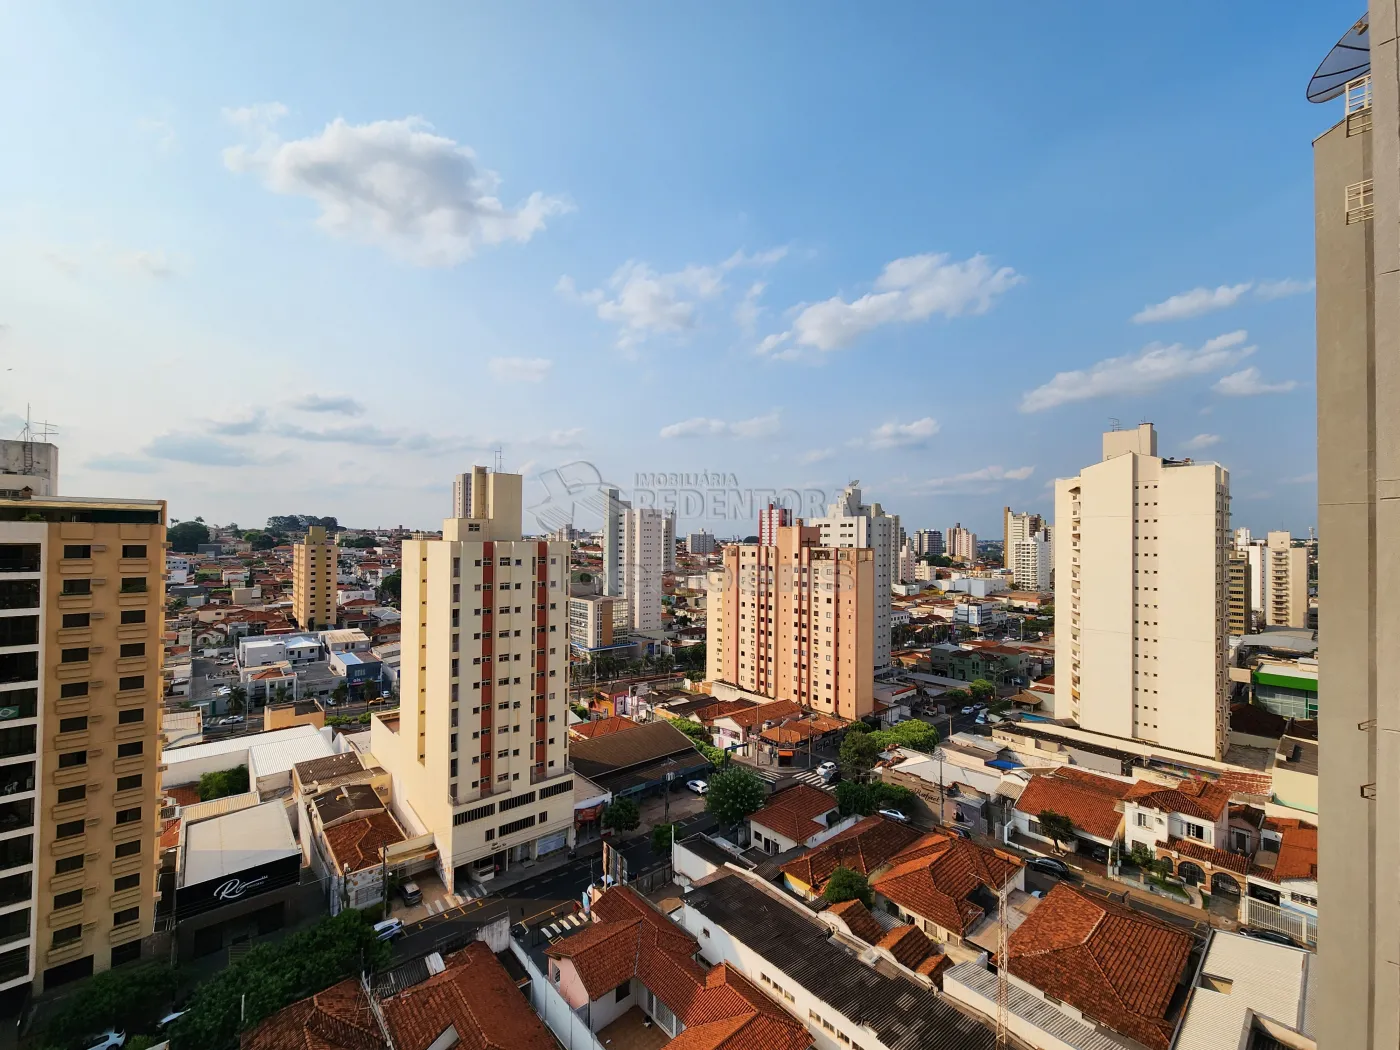 Alugar Apartamento / Padrão em São José do Rio Preto apenas R$ 1.300,00 - Foto 5